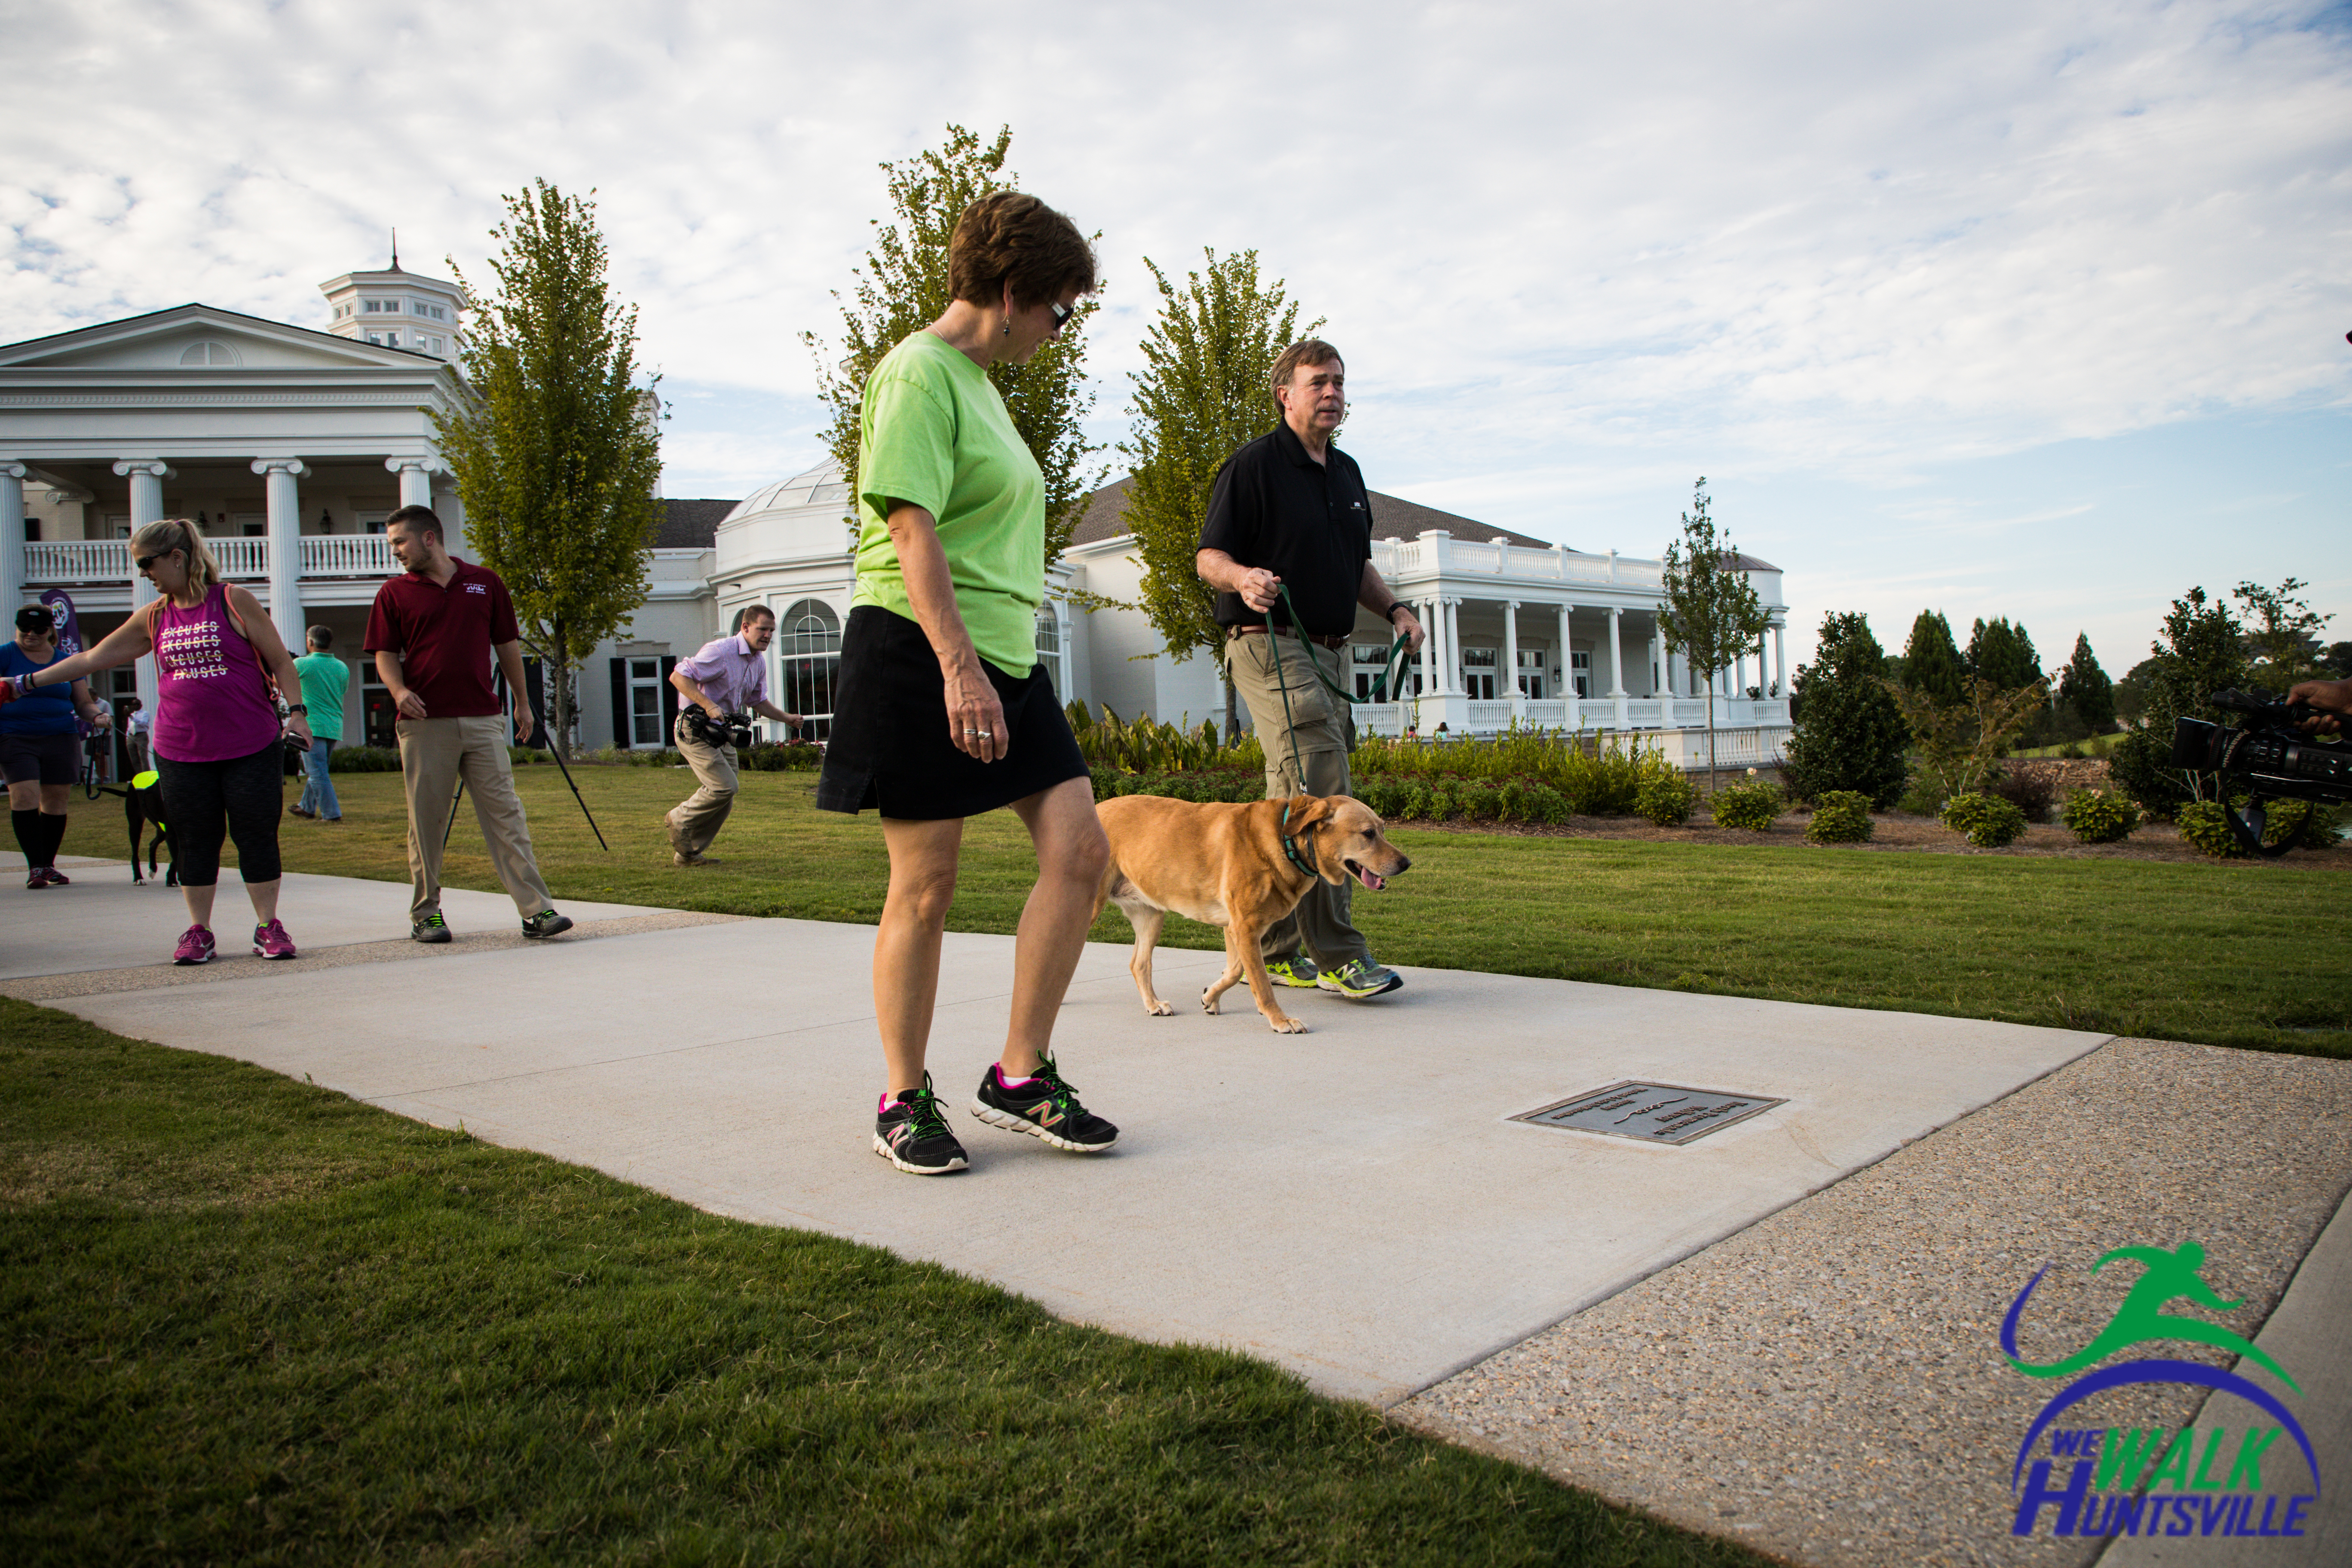 people walking their dogs at Huntsville Botanical Garden